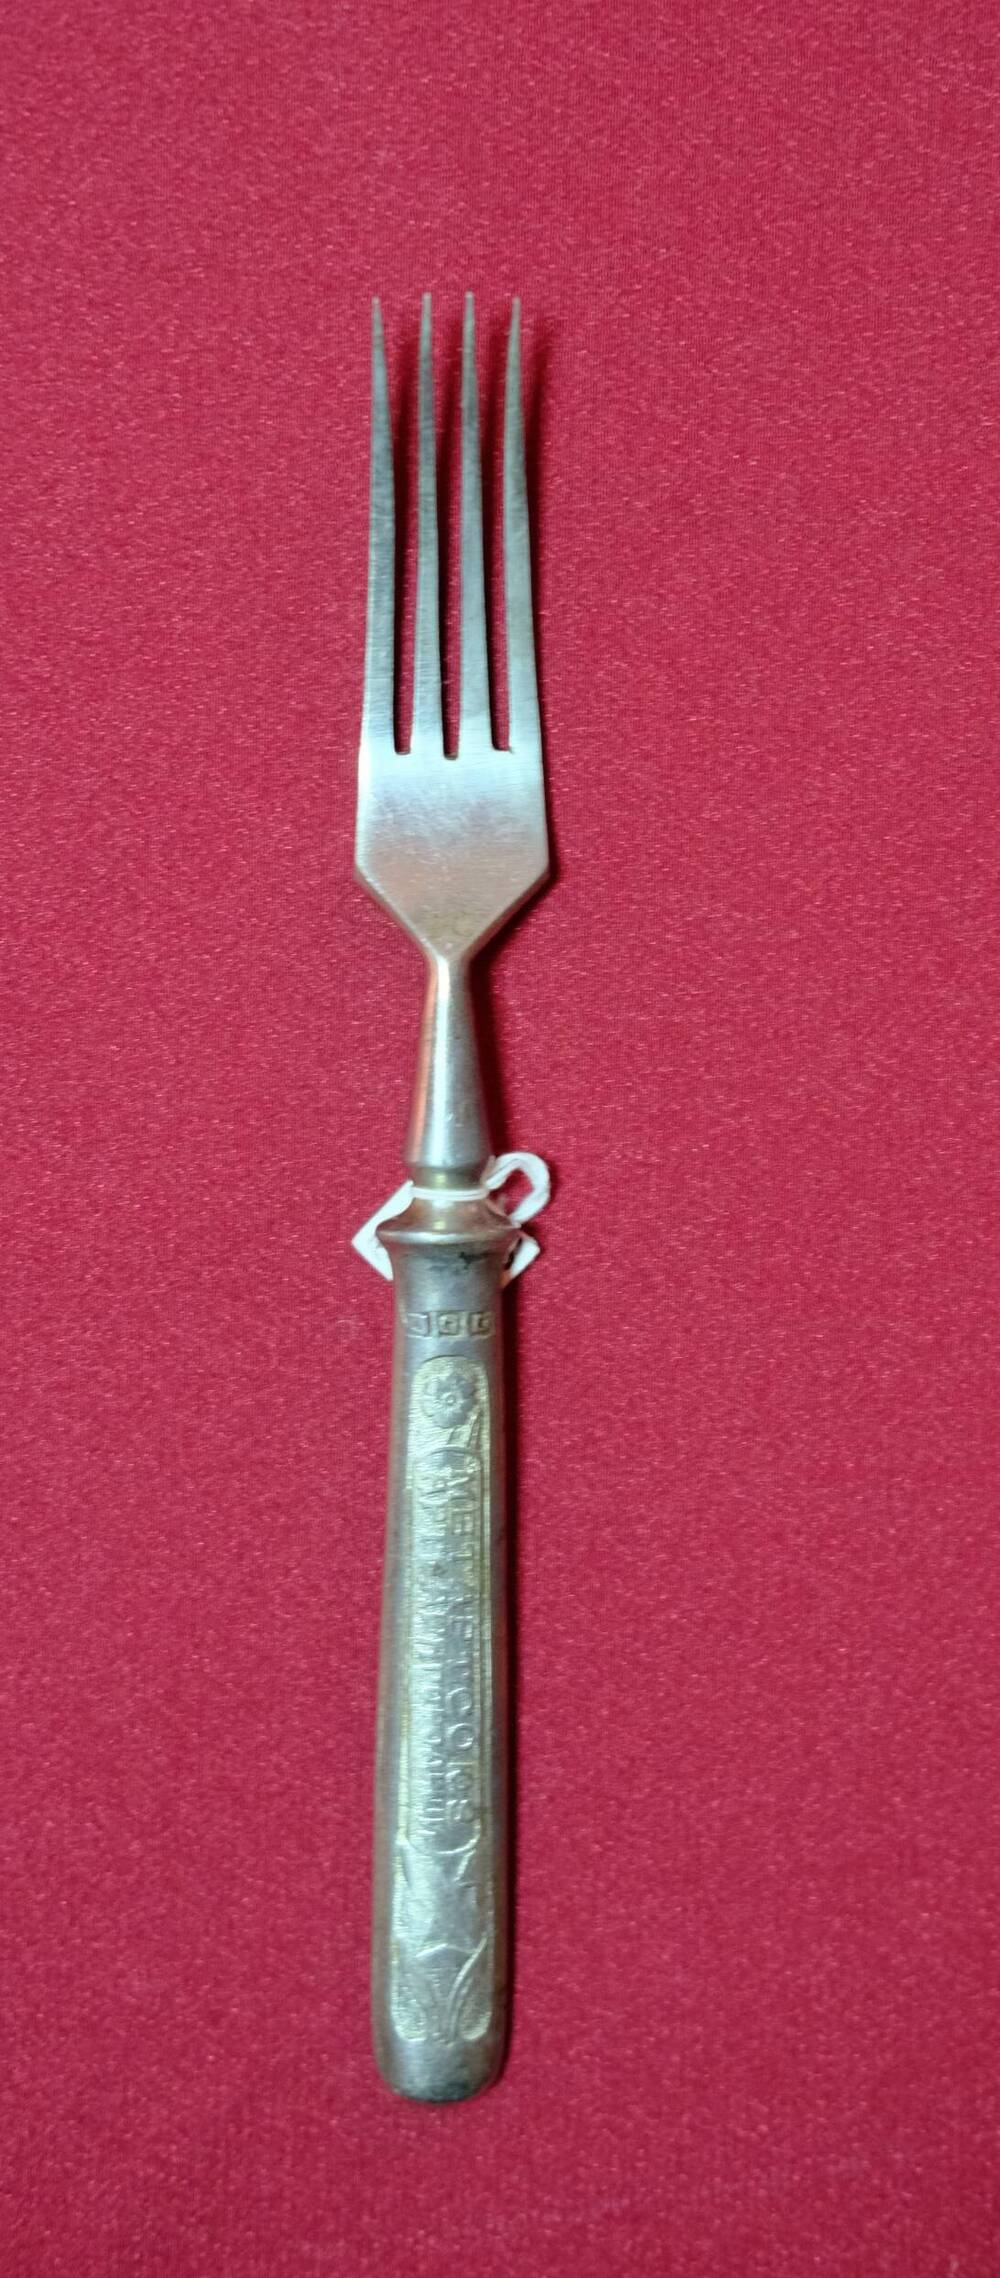 Вилка-столовый прибор с четырьмя острыми зубьями на длинной металлической ручке 50-е годы.